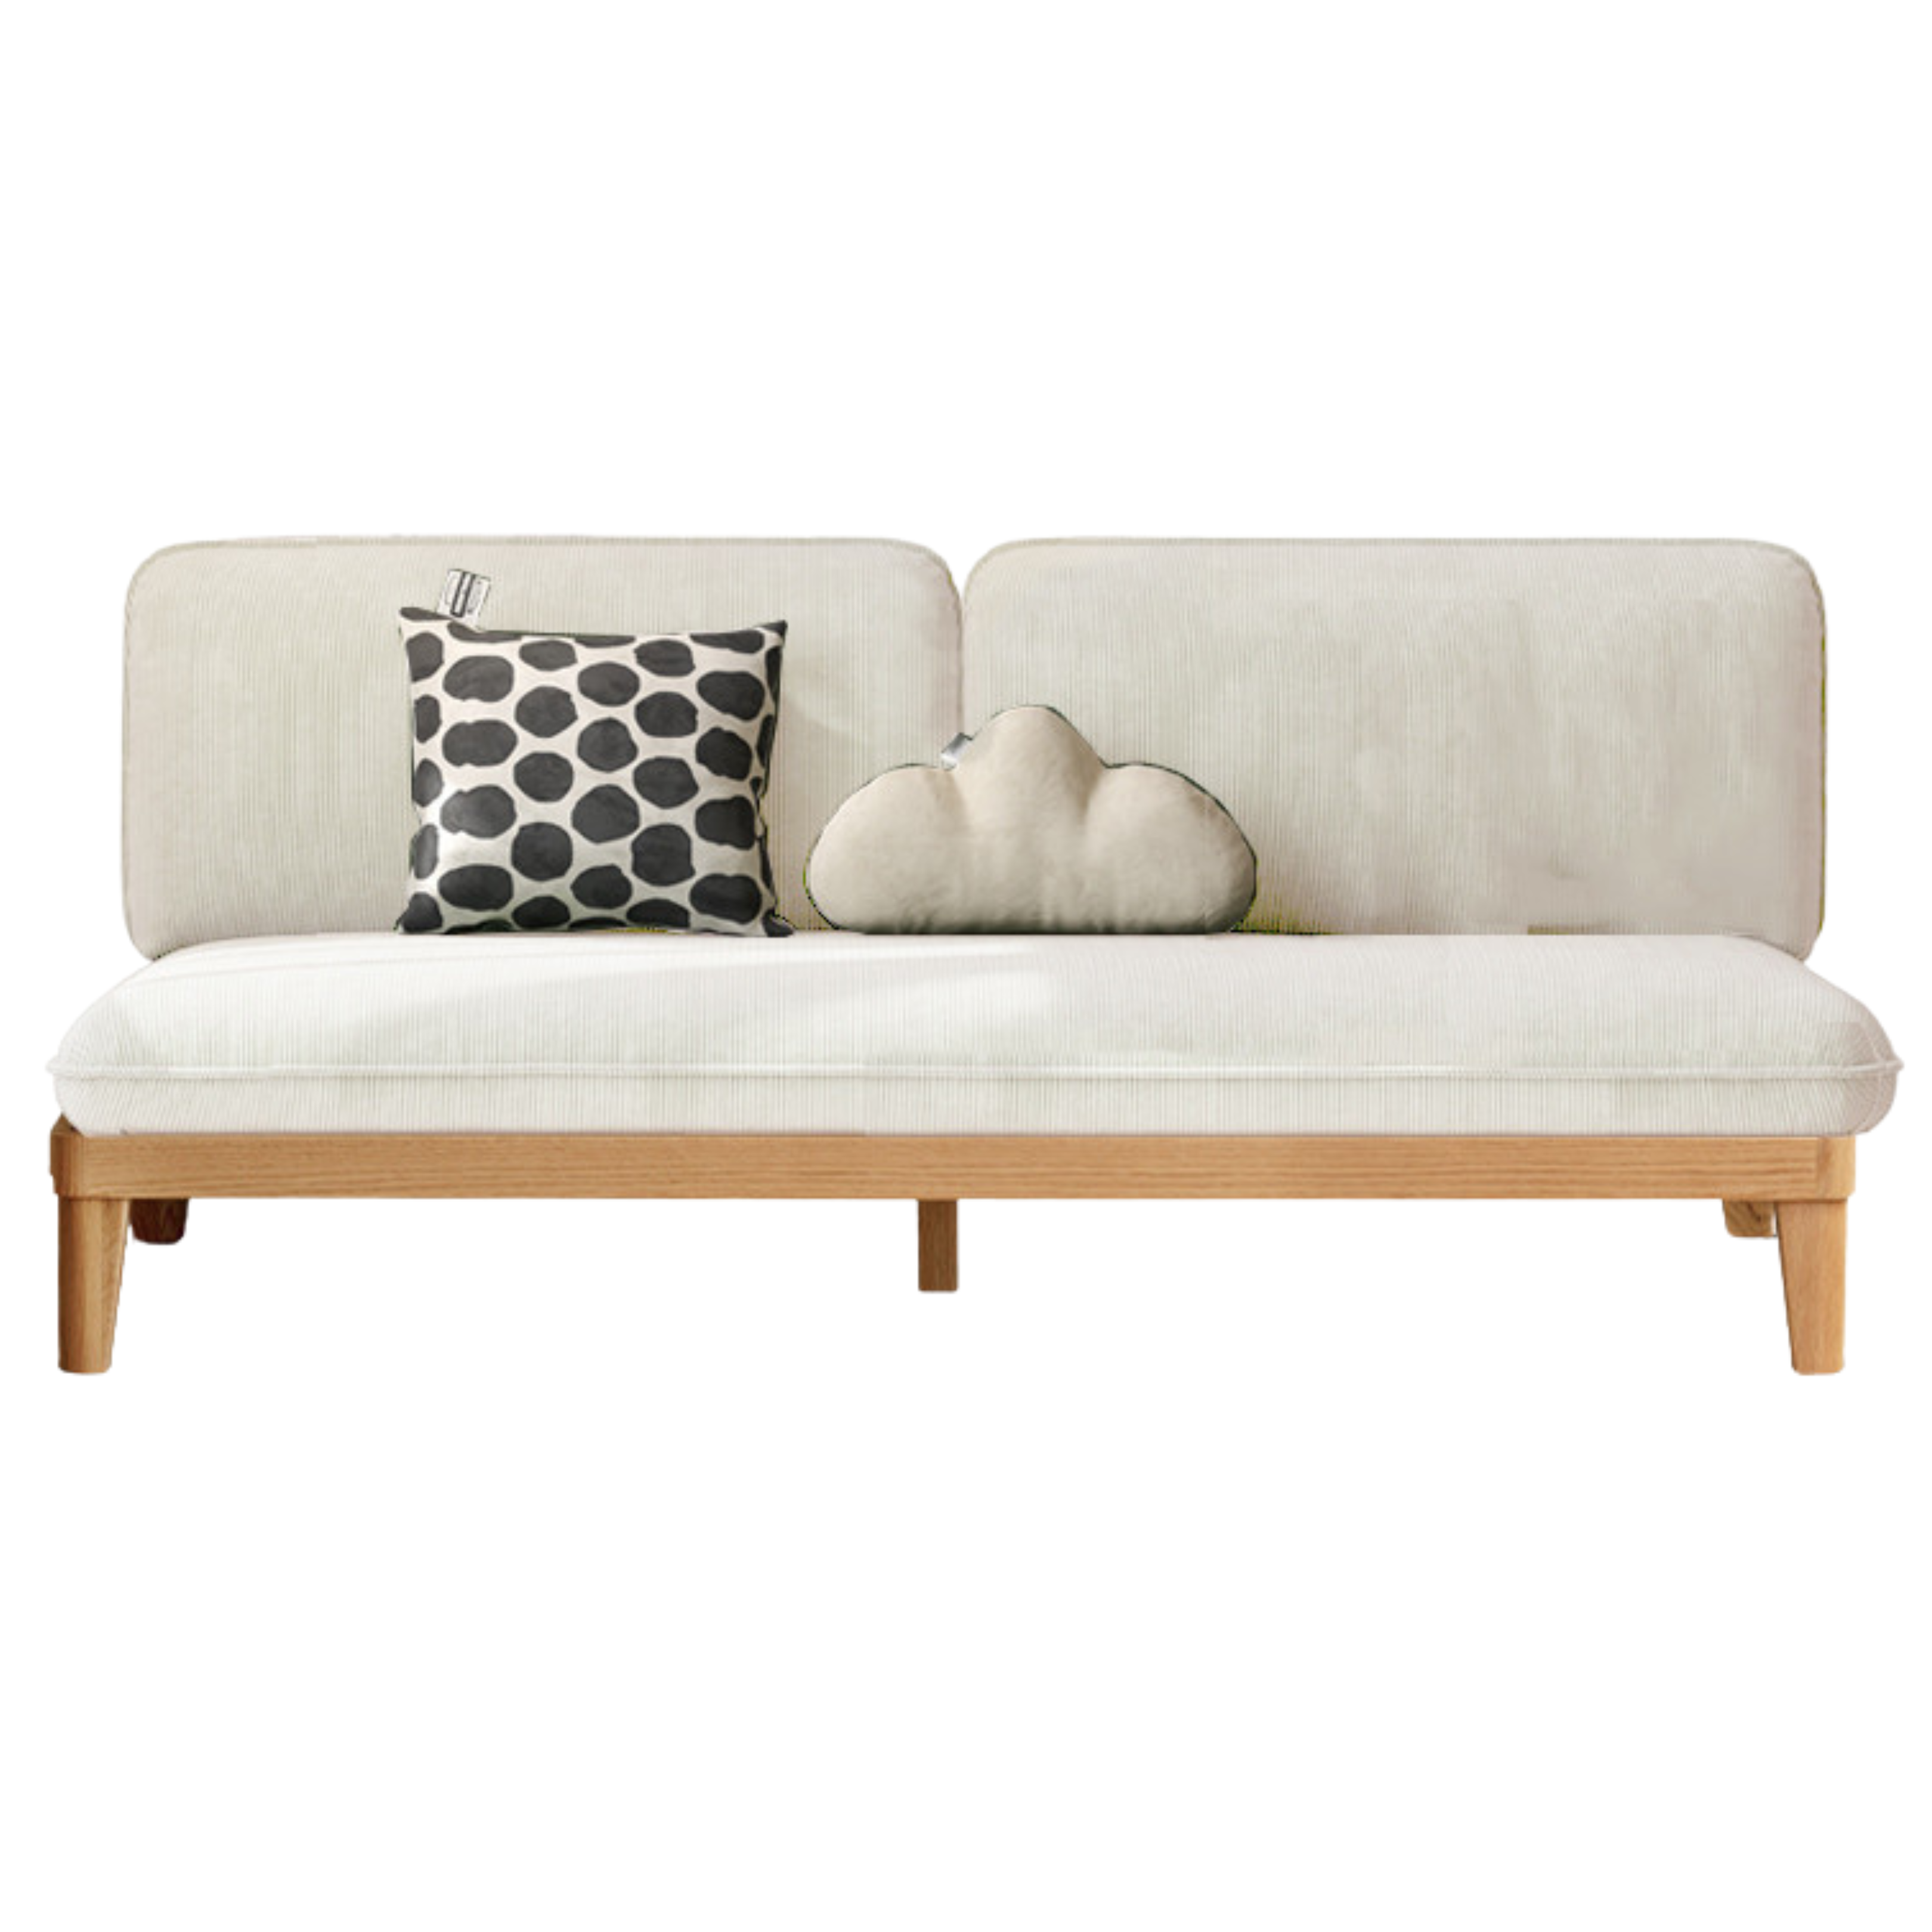 Oak solid wood fabric sofa)